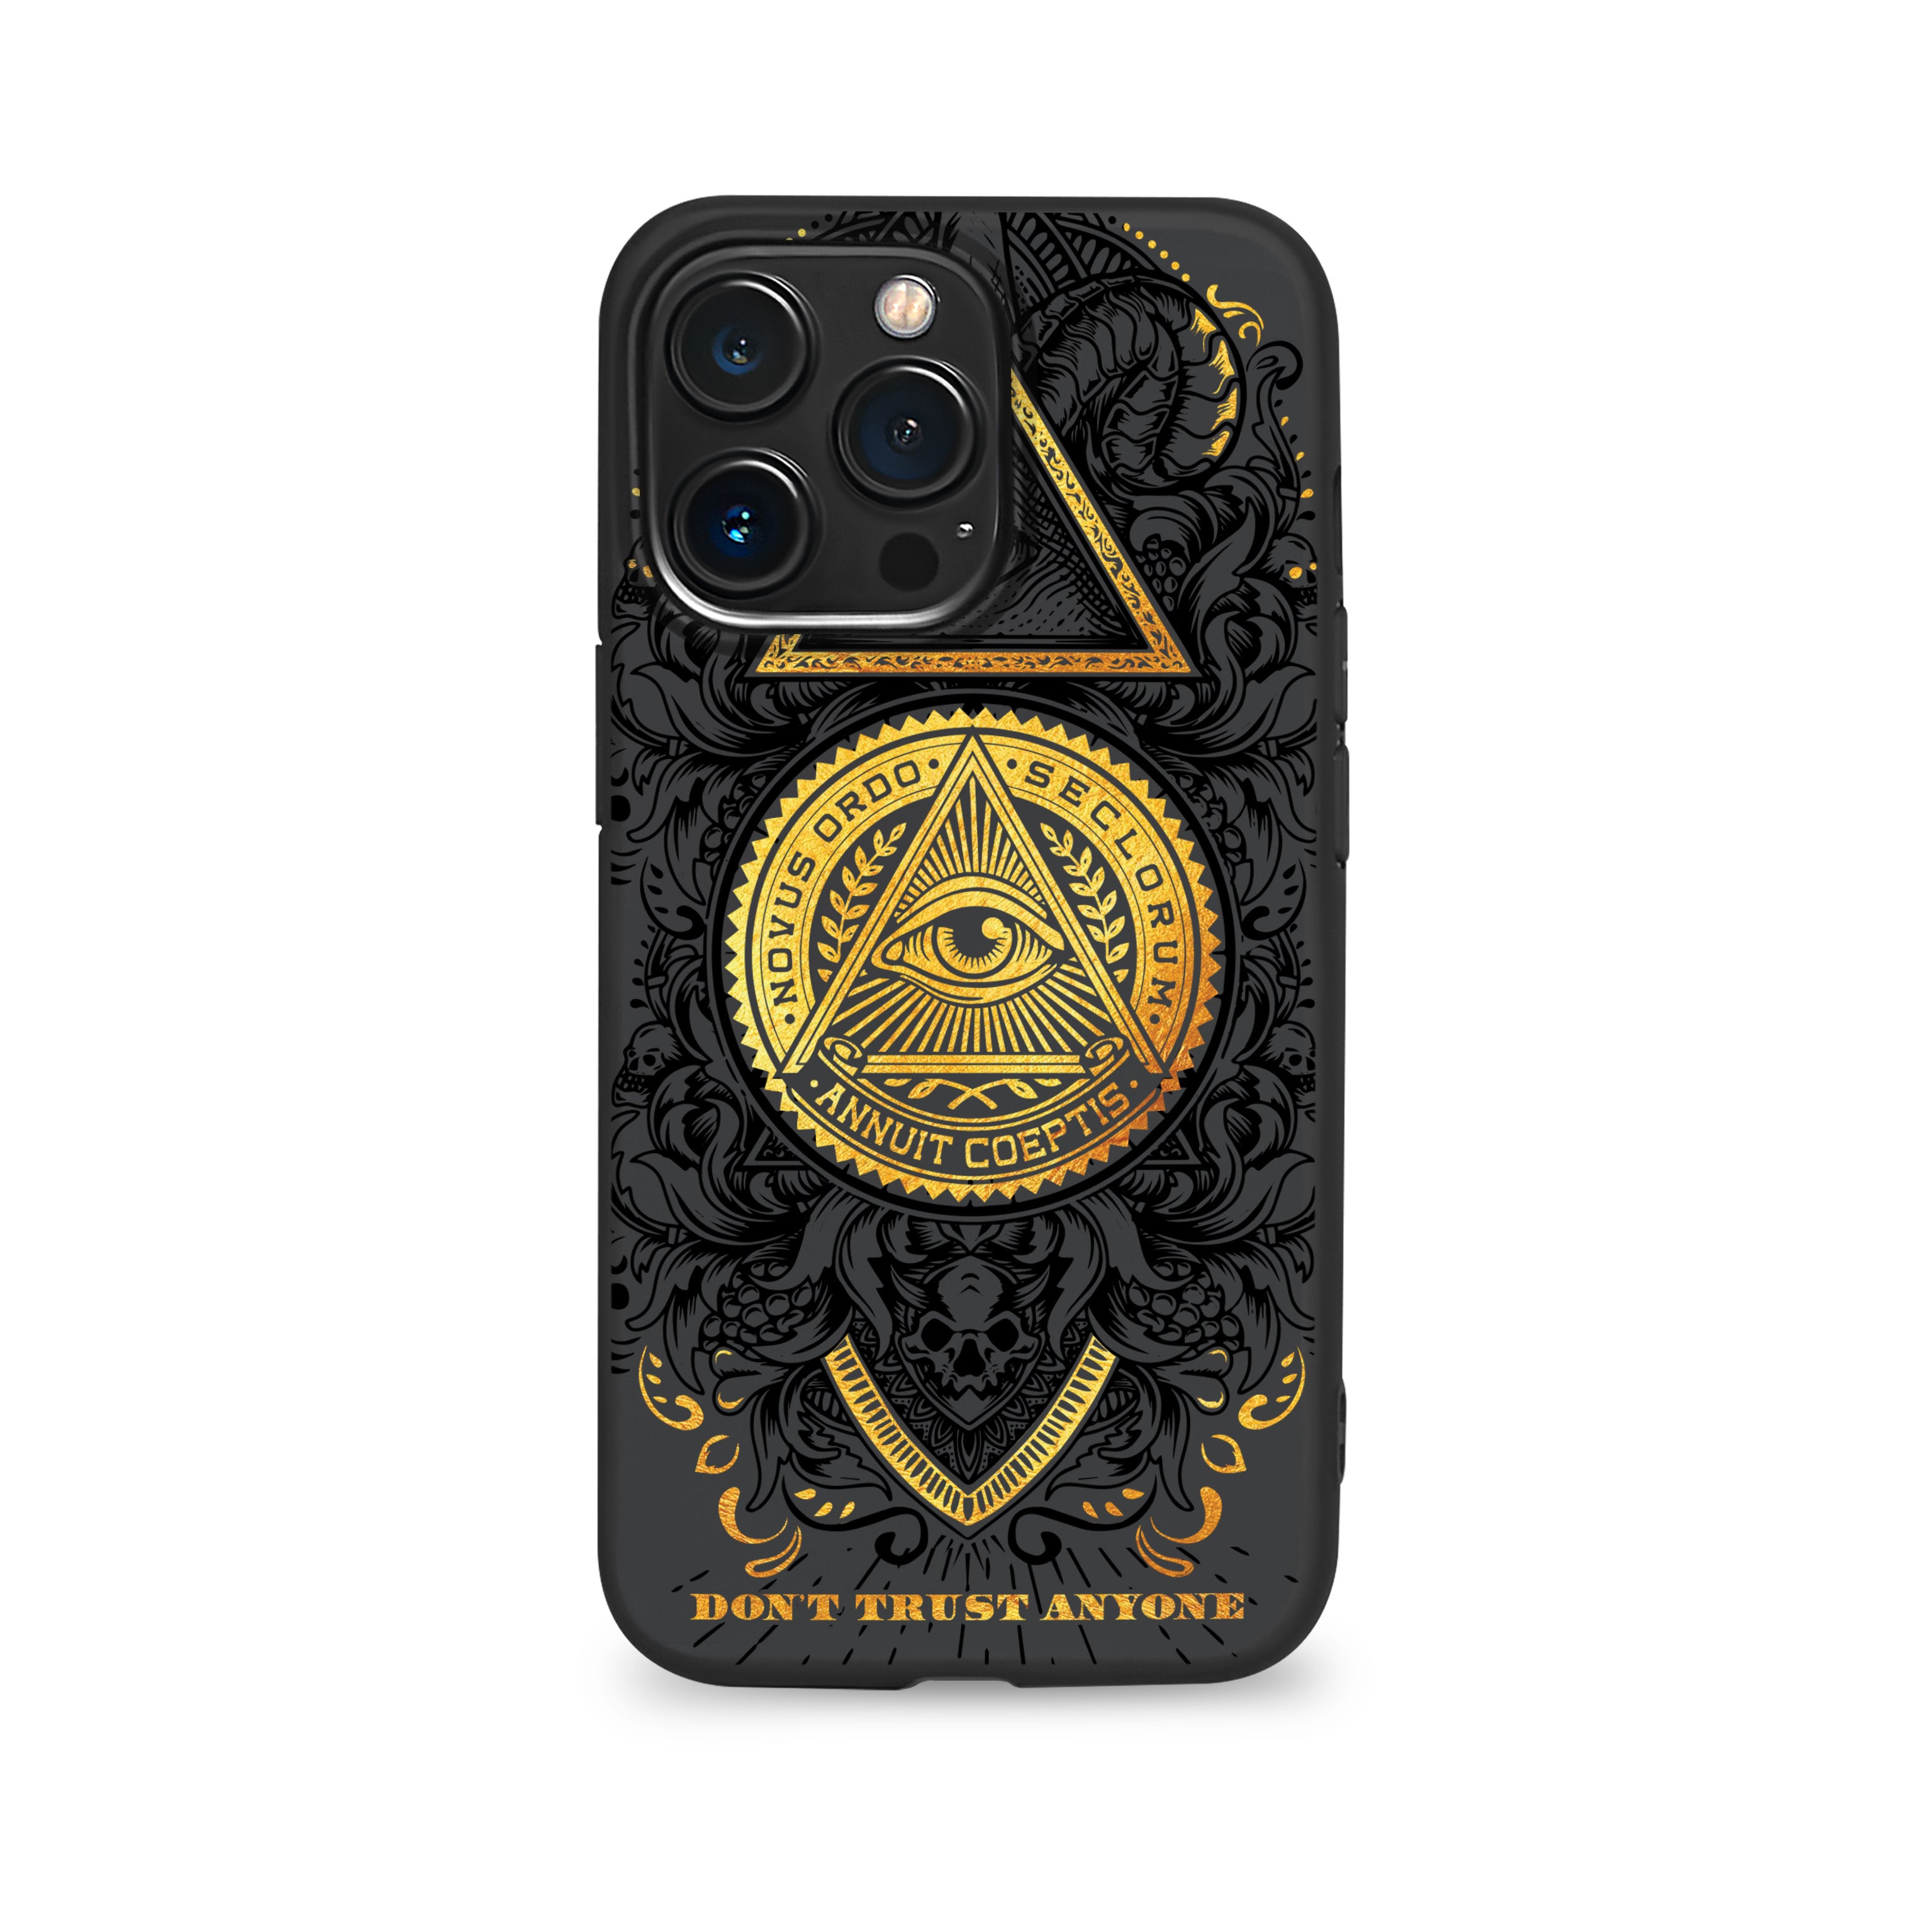 Gold Illuminati phone case for iPhone